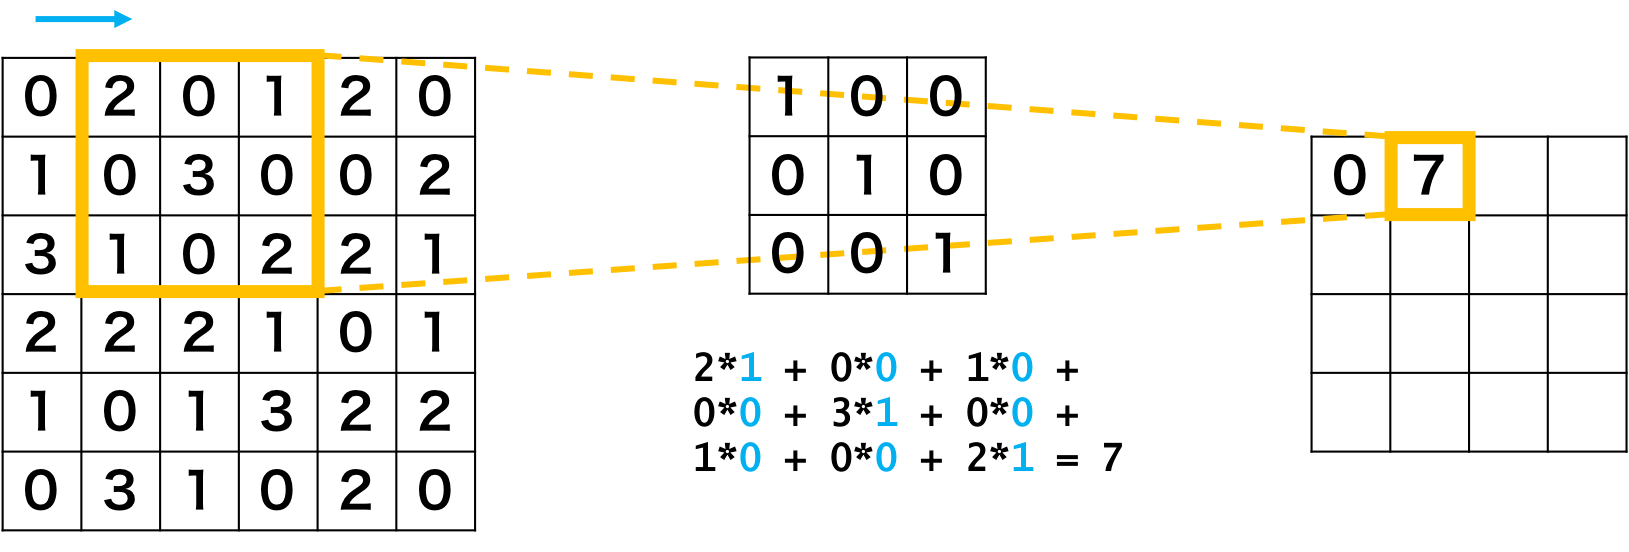 畳み込みニューラルネットワークの畳み込み層の例2